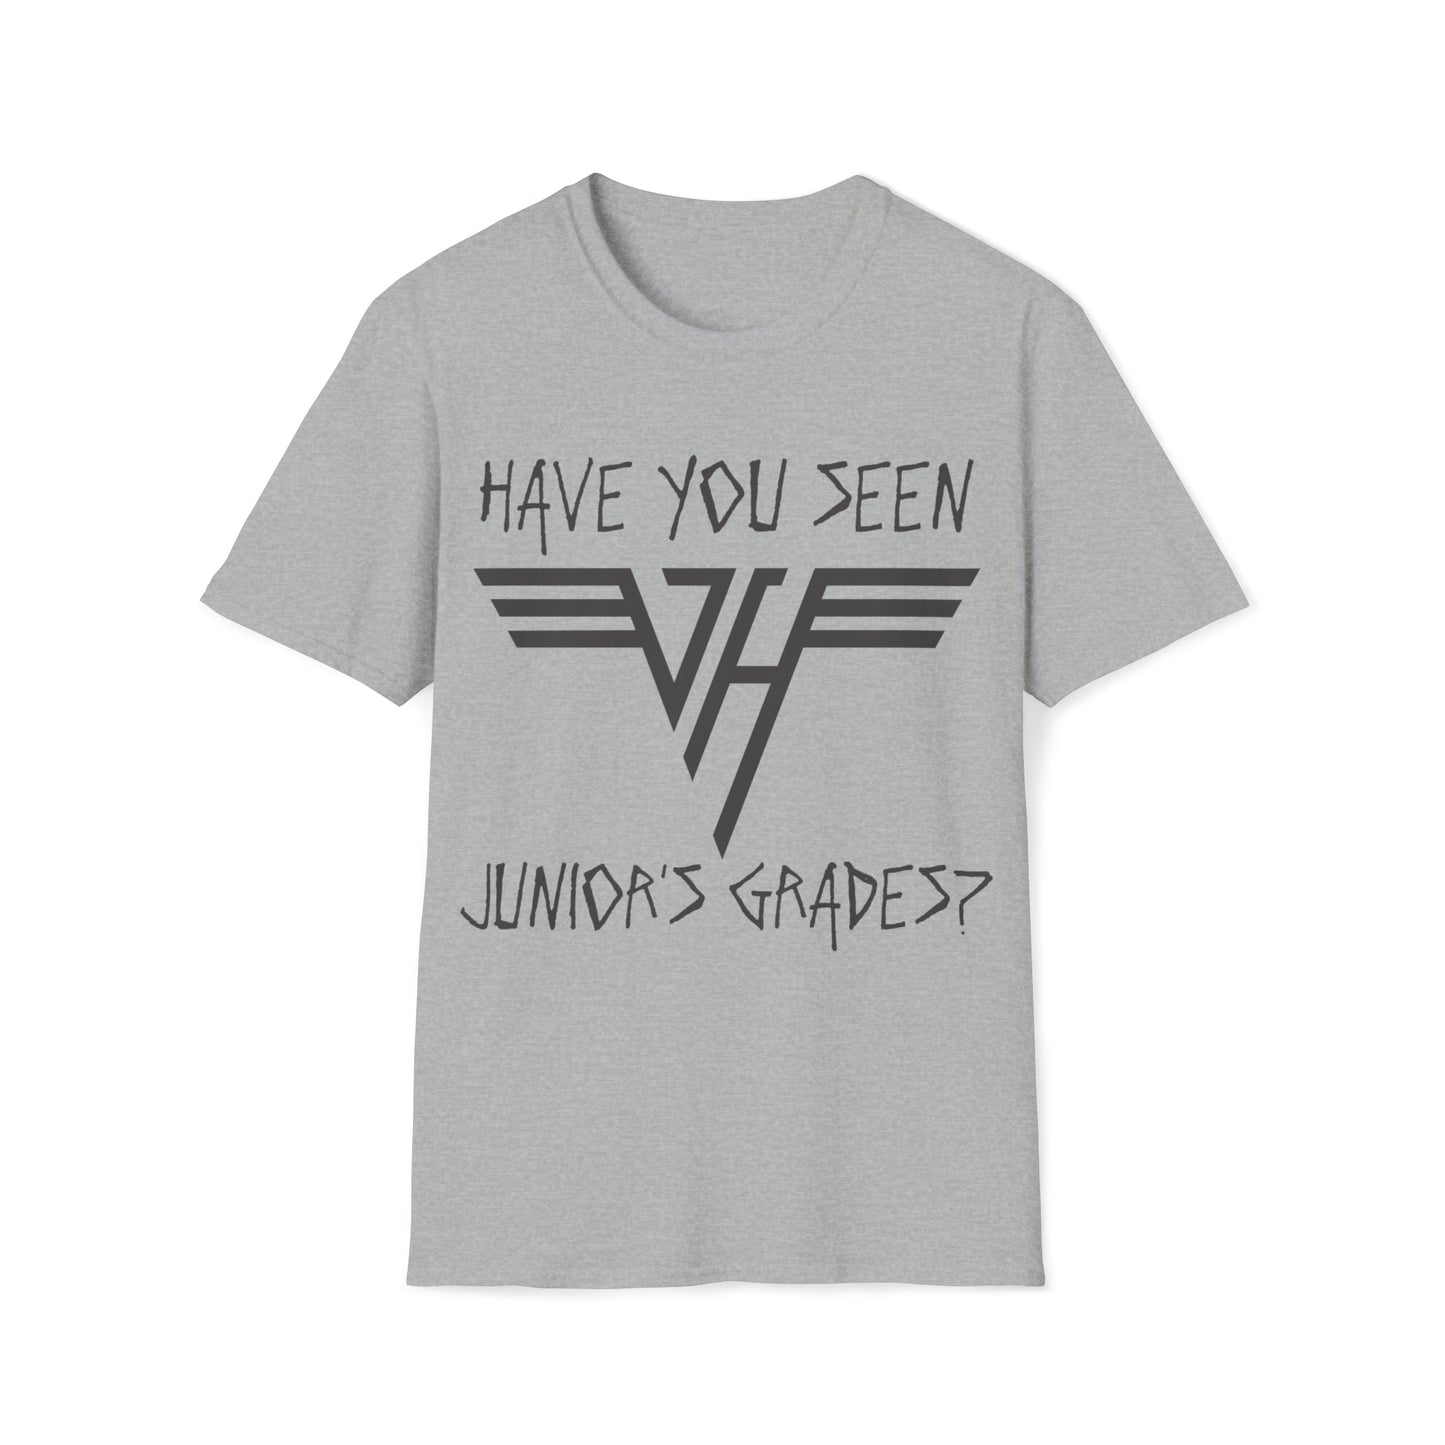 Van Halen "Have You Seen Junior's Grades?" Tee (8 Colors)